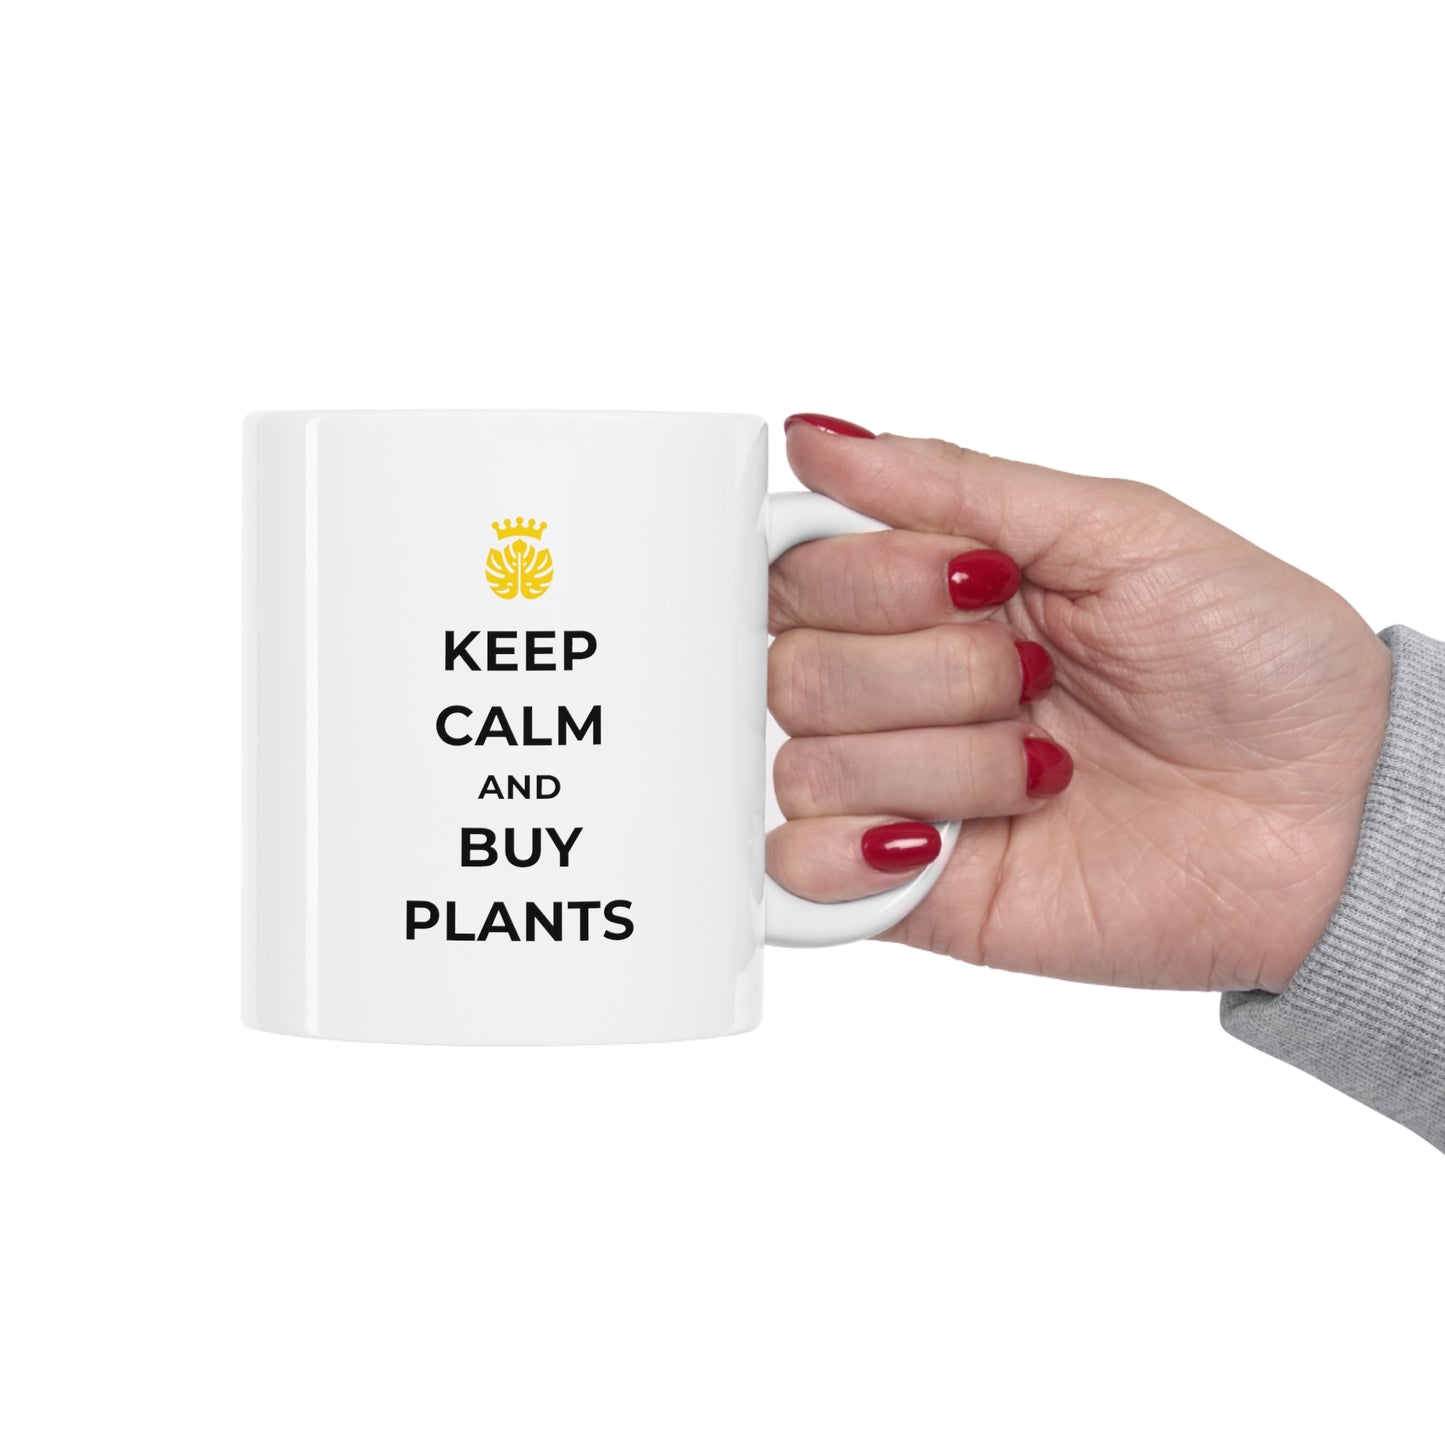 "Keep Calm and Buy Plants" | Coffee Mug